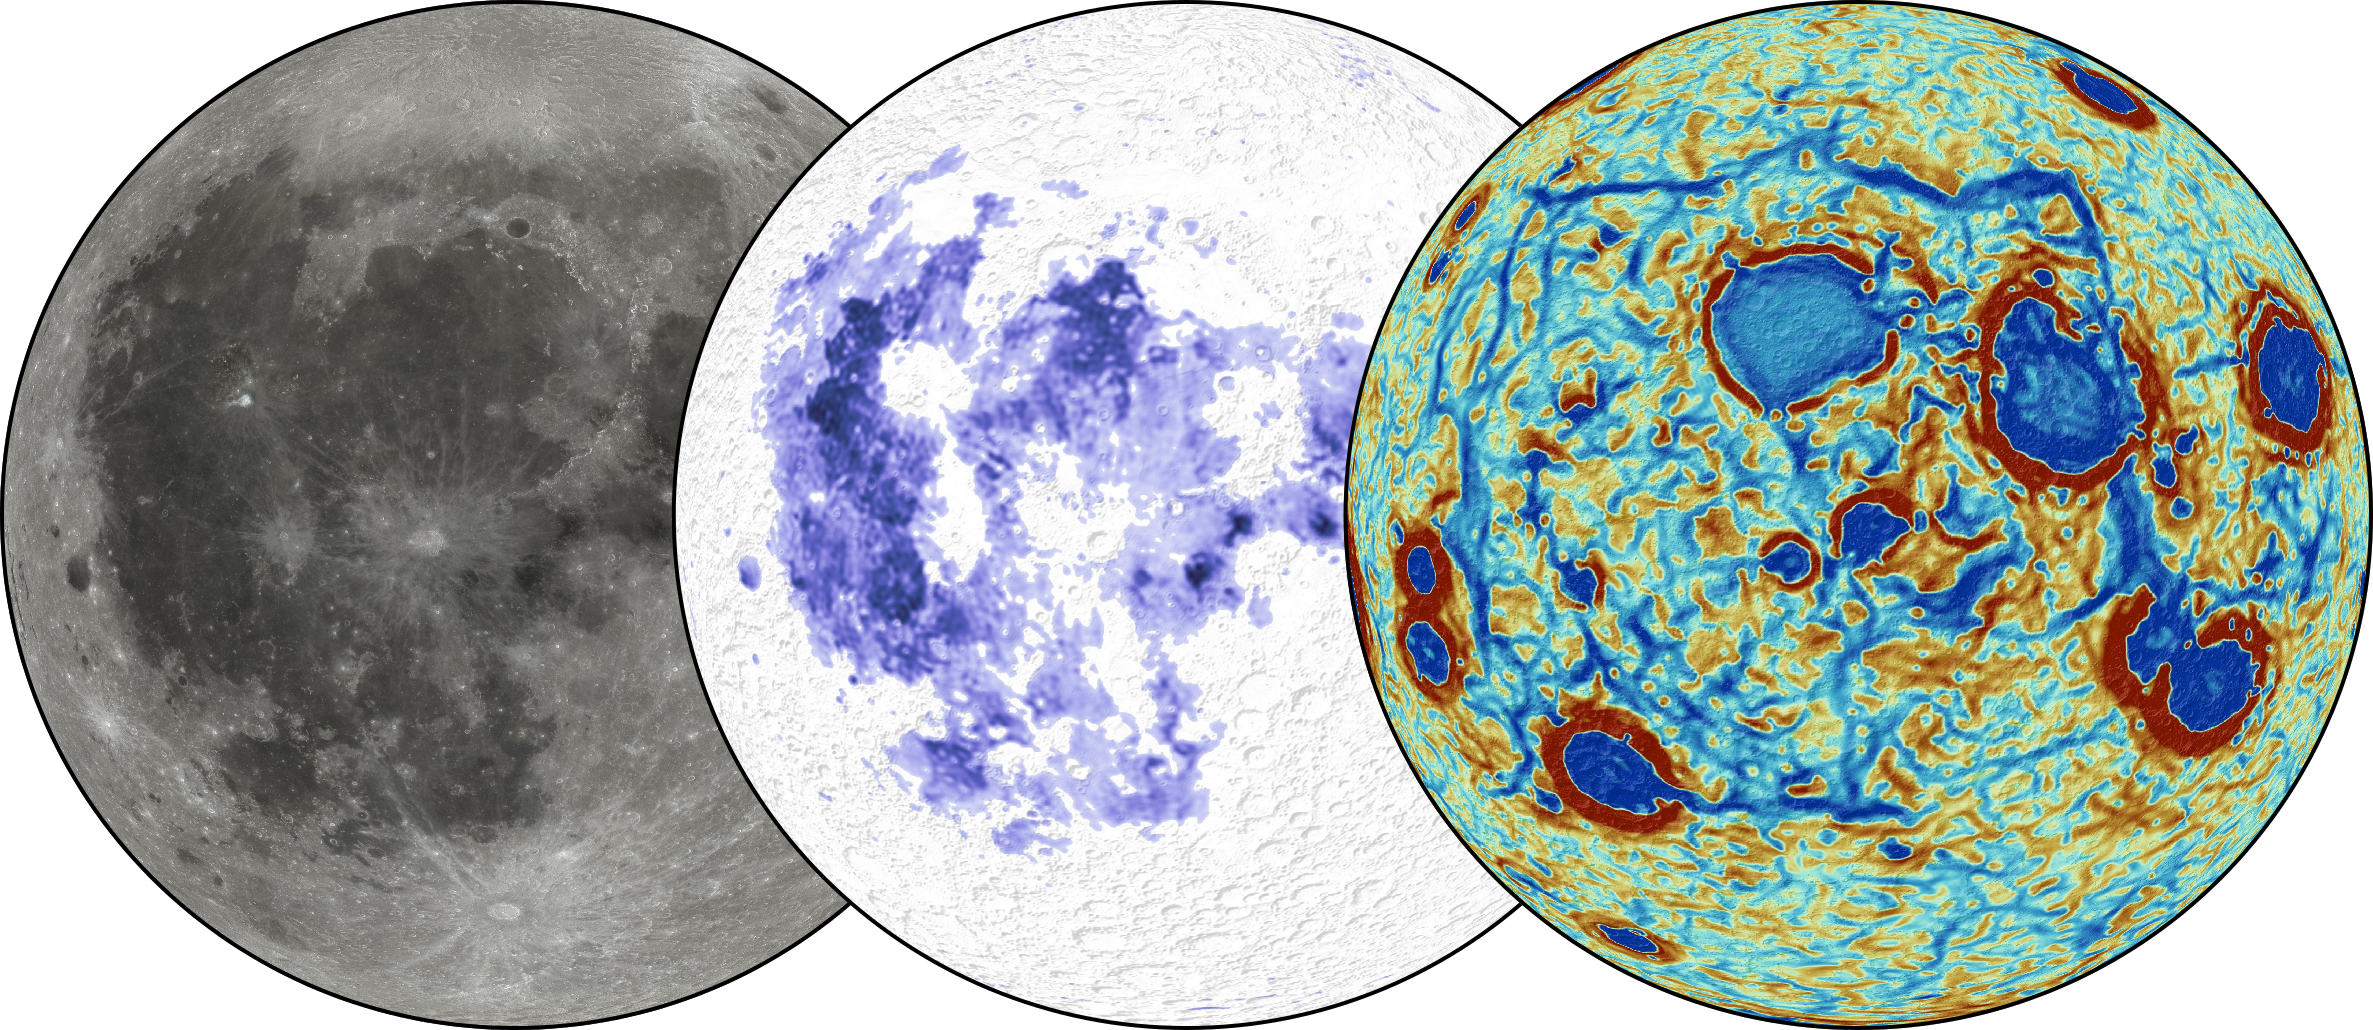 Illustrazione delle anomalie del terreno lunare riscontrate nello studio